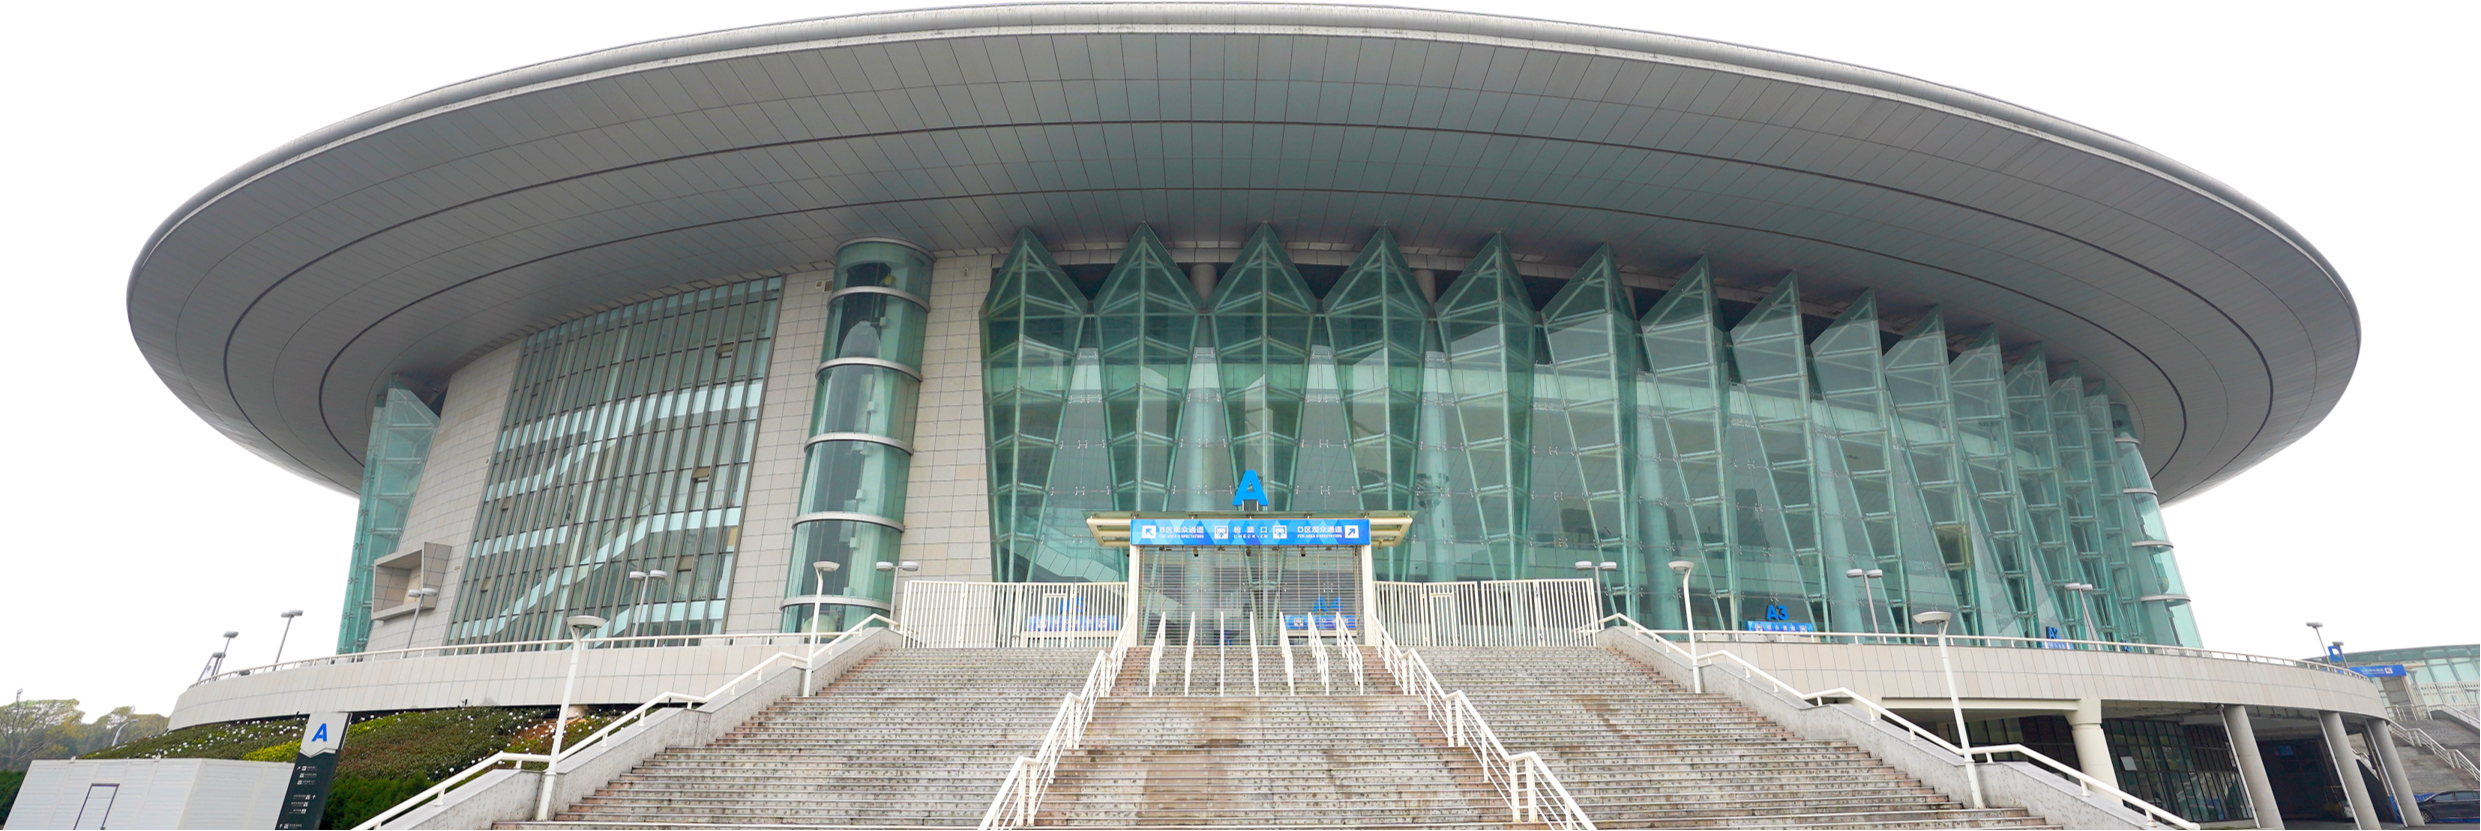 武漢體育中心七軍會"一場兩館"綜合改造項目體育館裝修工程